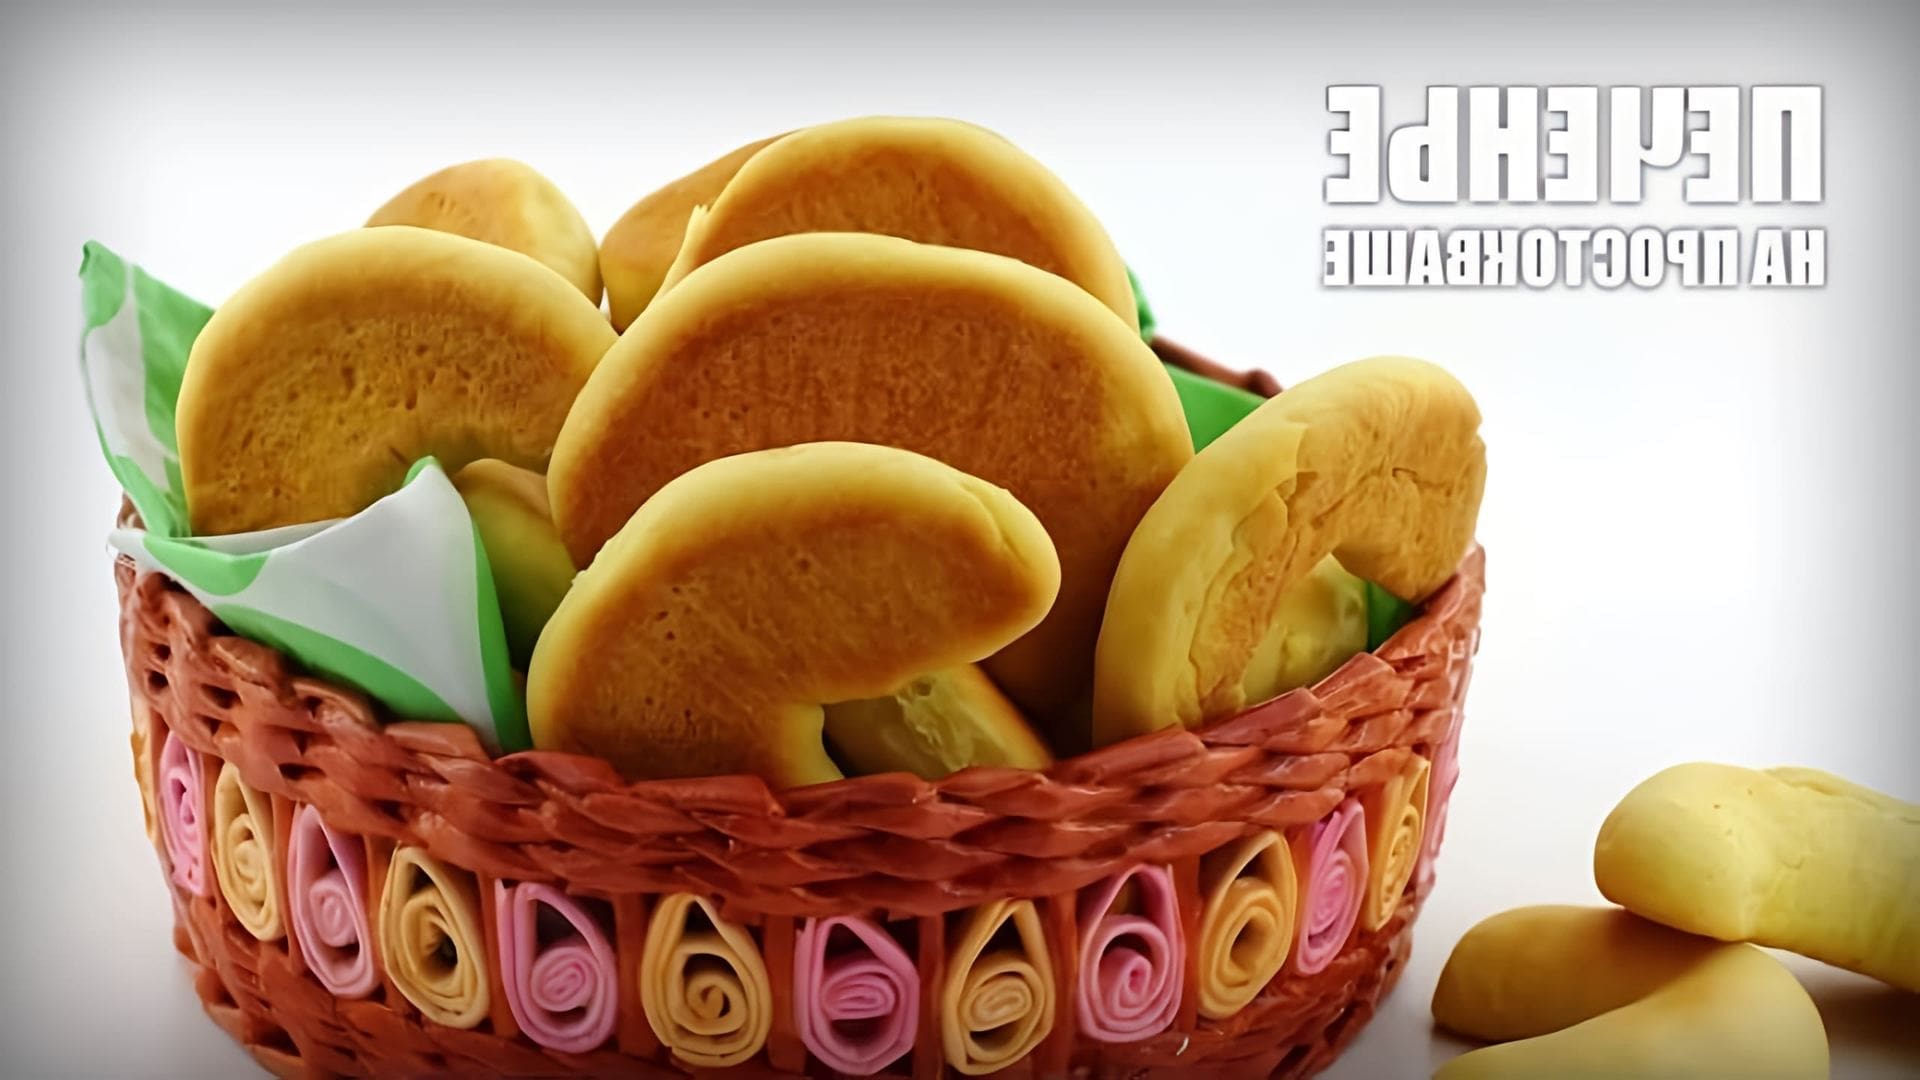 В данном видео демонстрируется рецепт приготовления домашнего печенья на простокваше